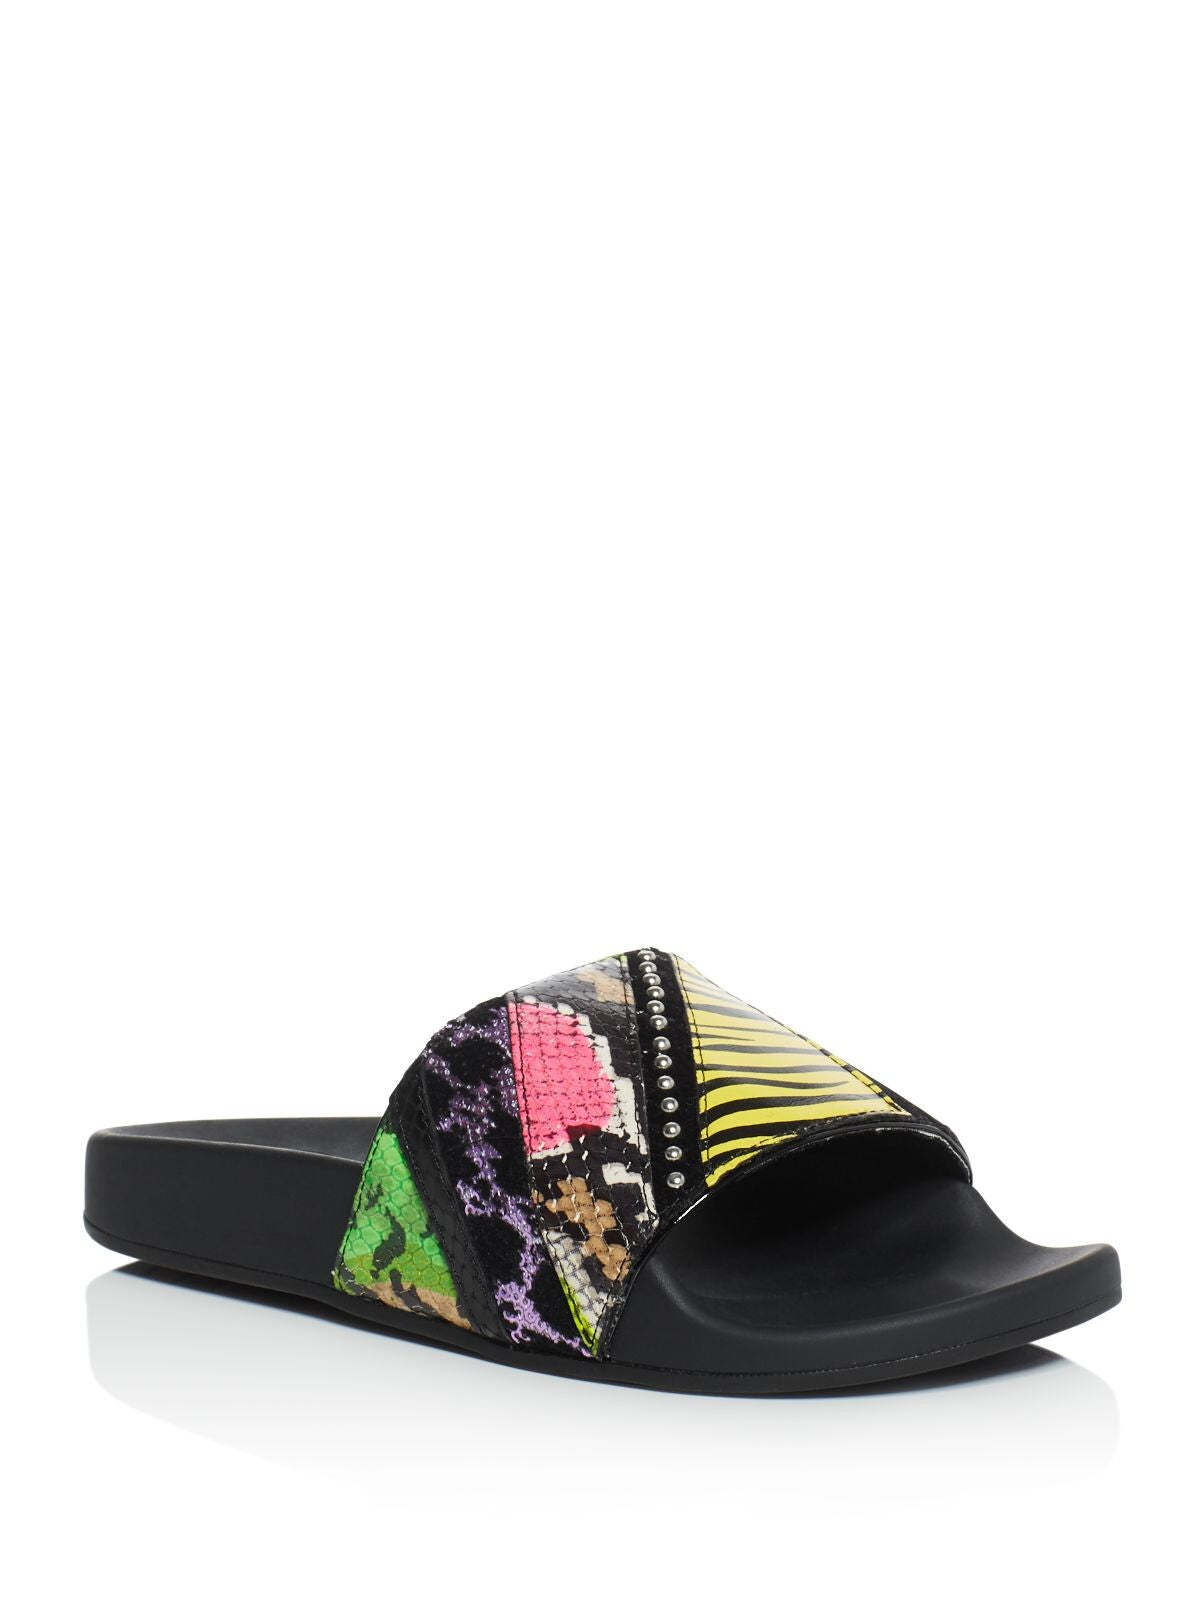 MARC JACOBS Womens Black Mixed Media Embellished Comfort Cooper Round Toe Platform Slip On Leather Slide Sandals Shoes 36